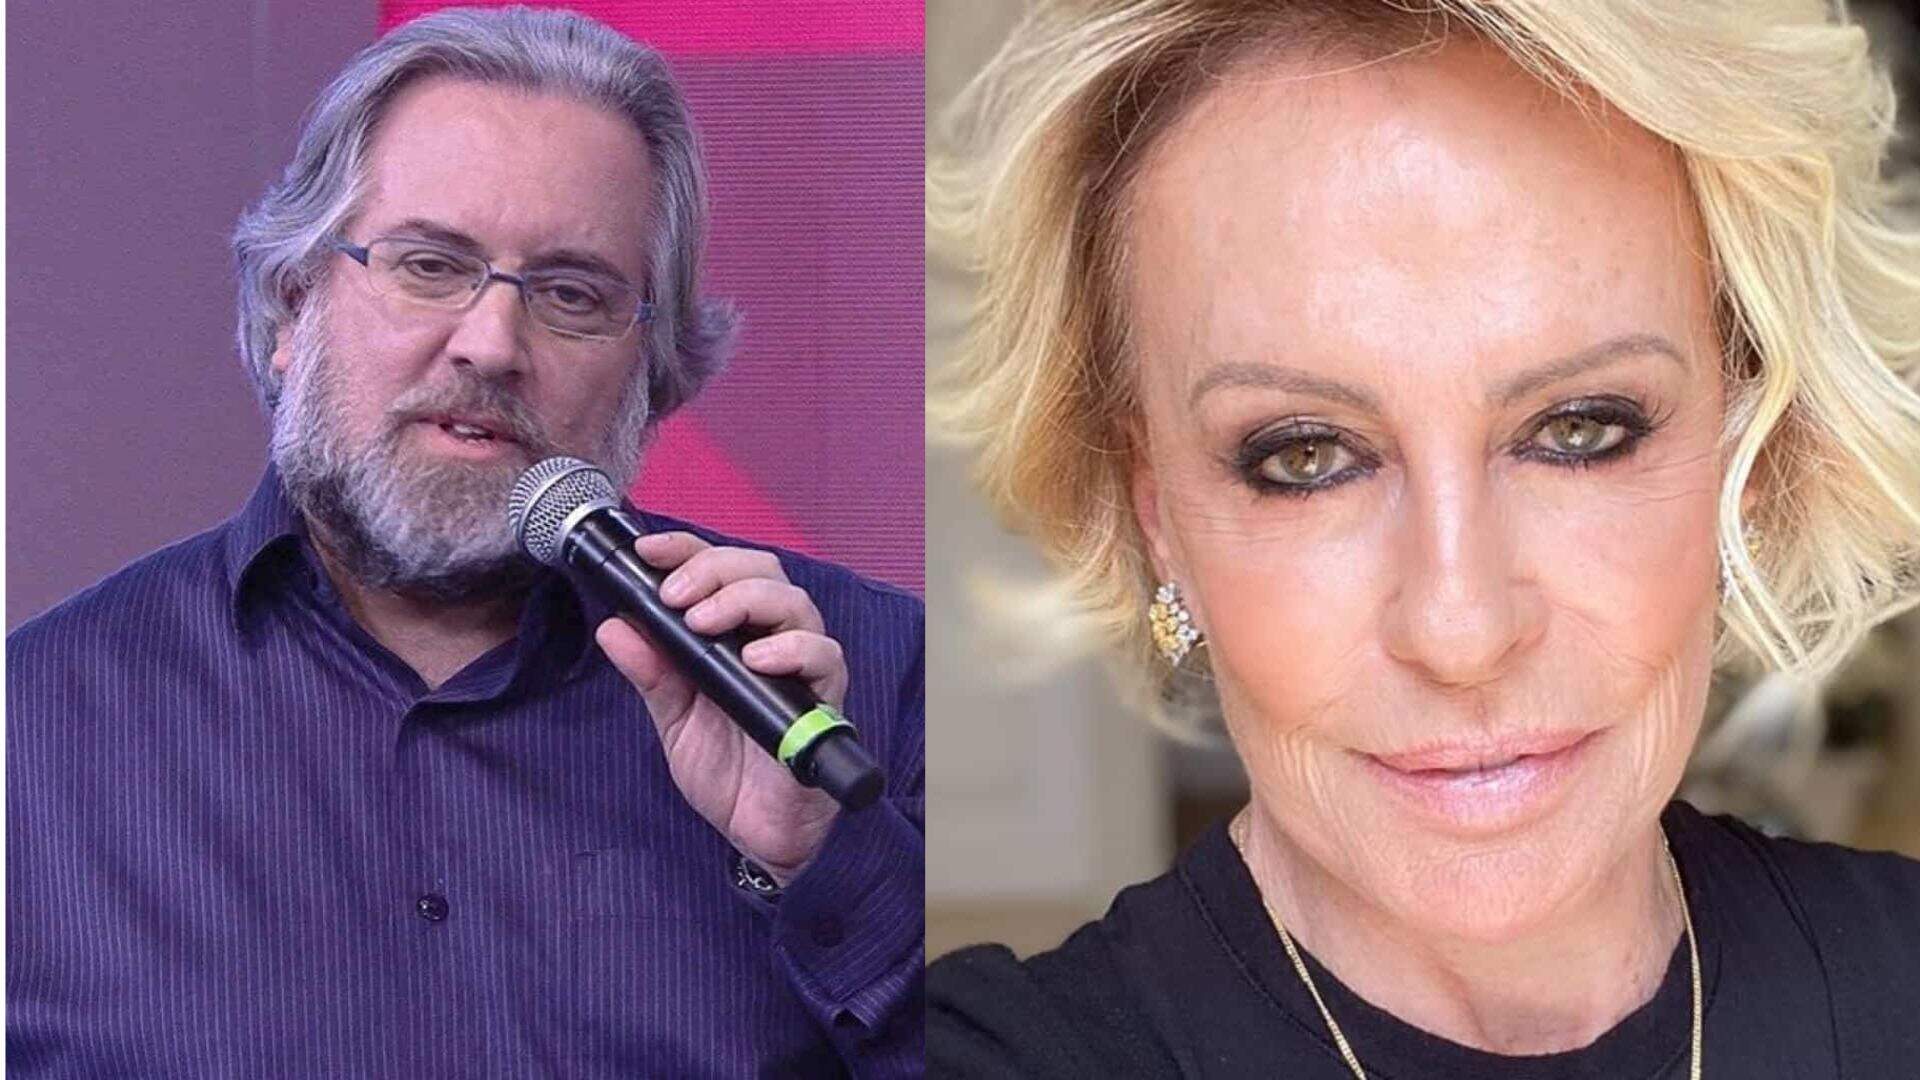 Saiu chorando? Leão Lobo faz revelação inesperada sobre Ana Maria Braga: “Me humilhou” - Metropolitana FM